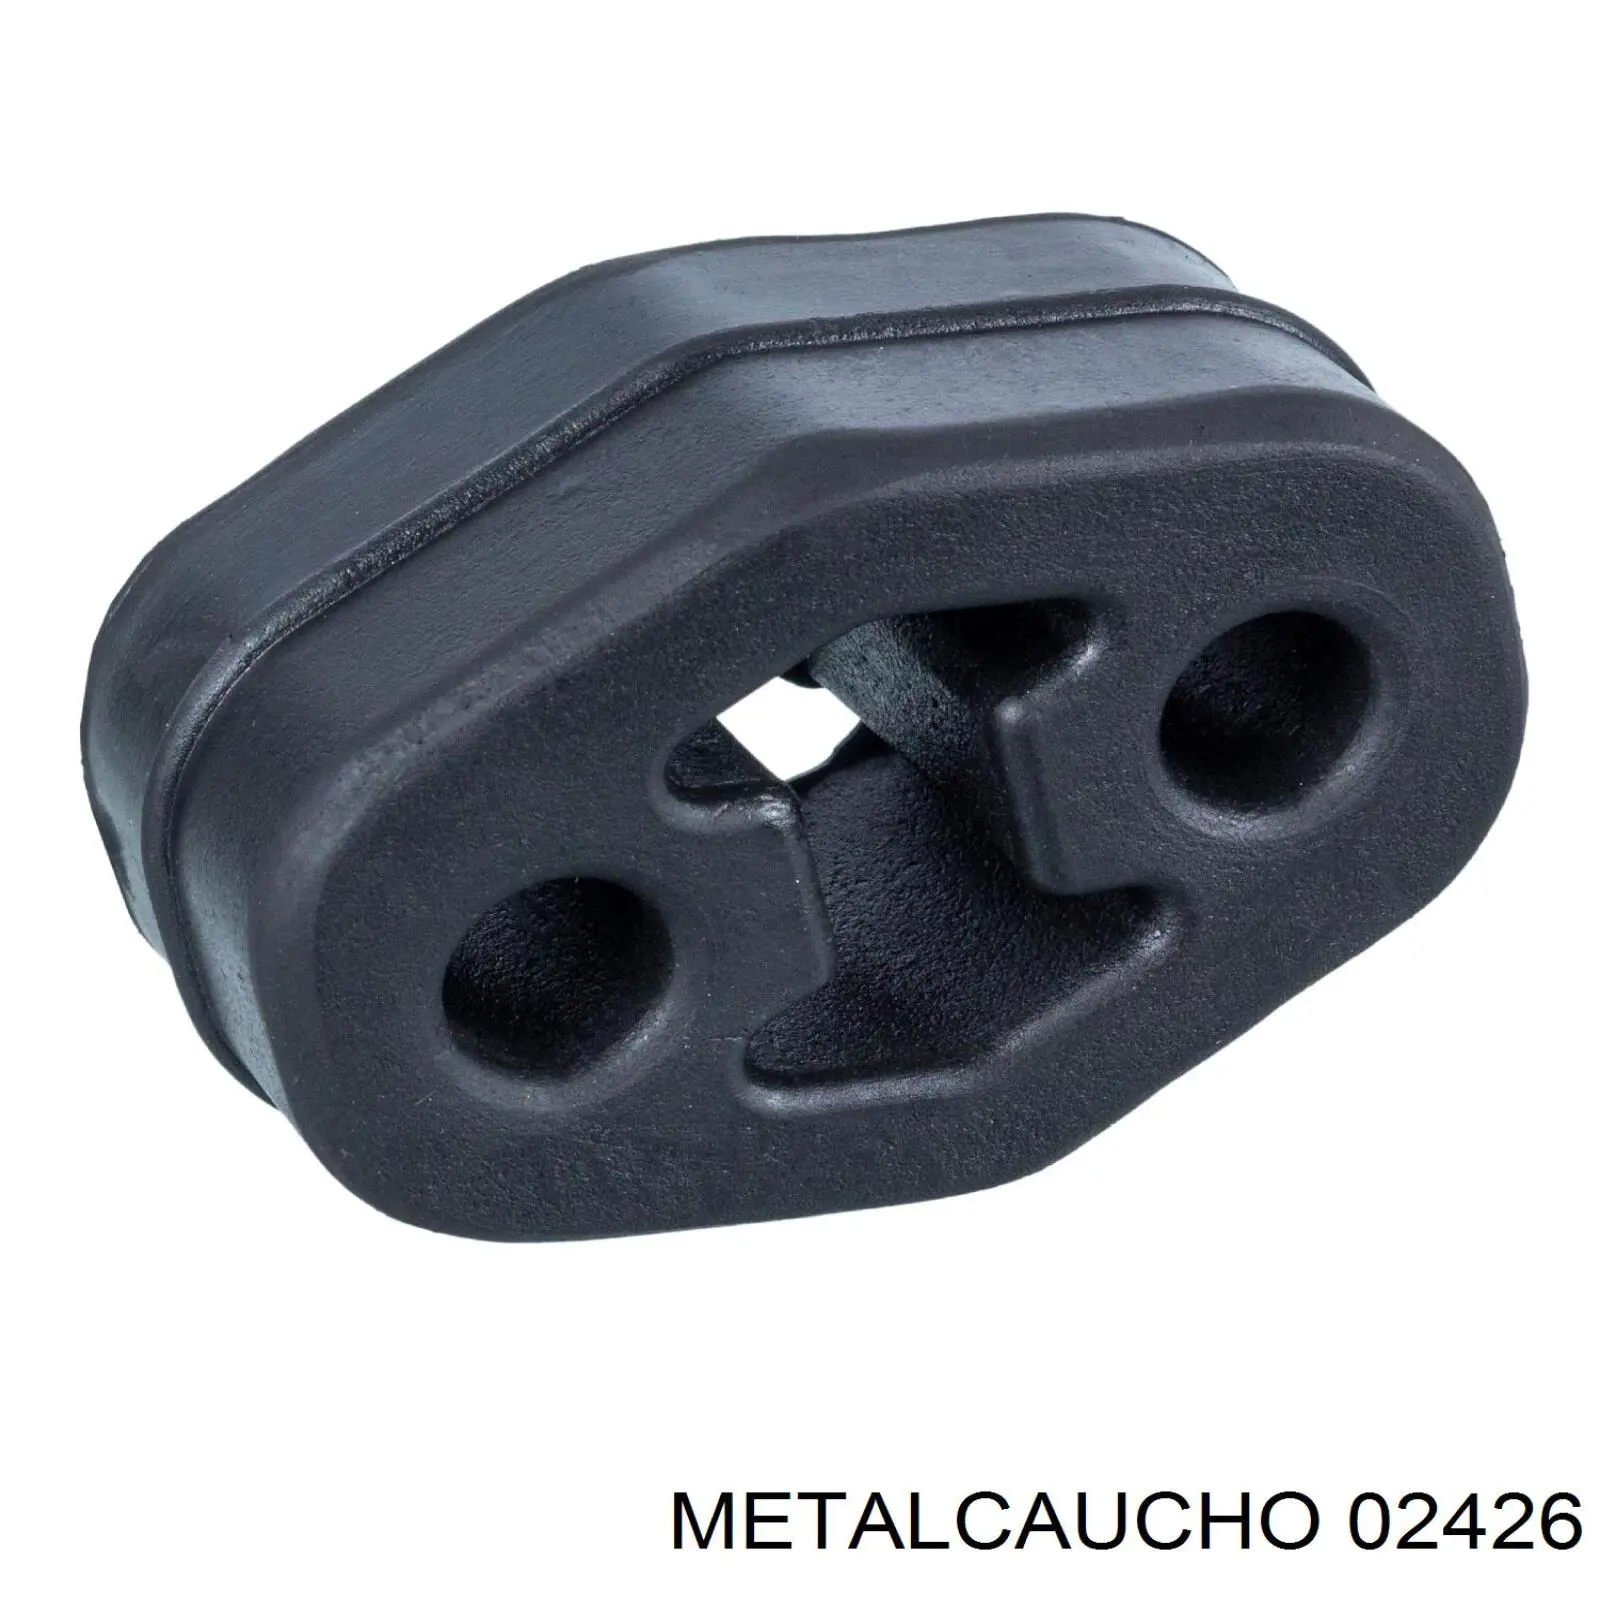 02426 Metalcaucho подушка крепления глушителя